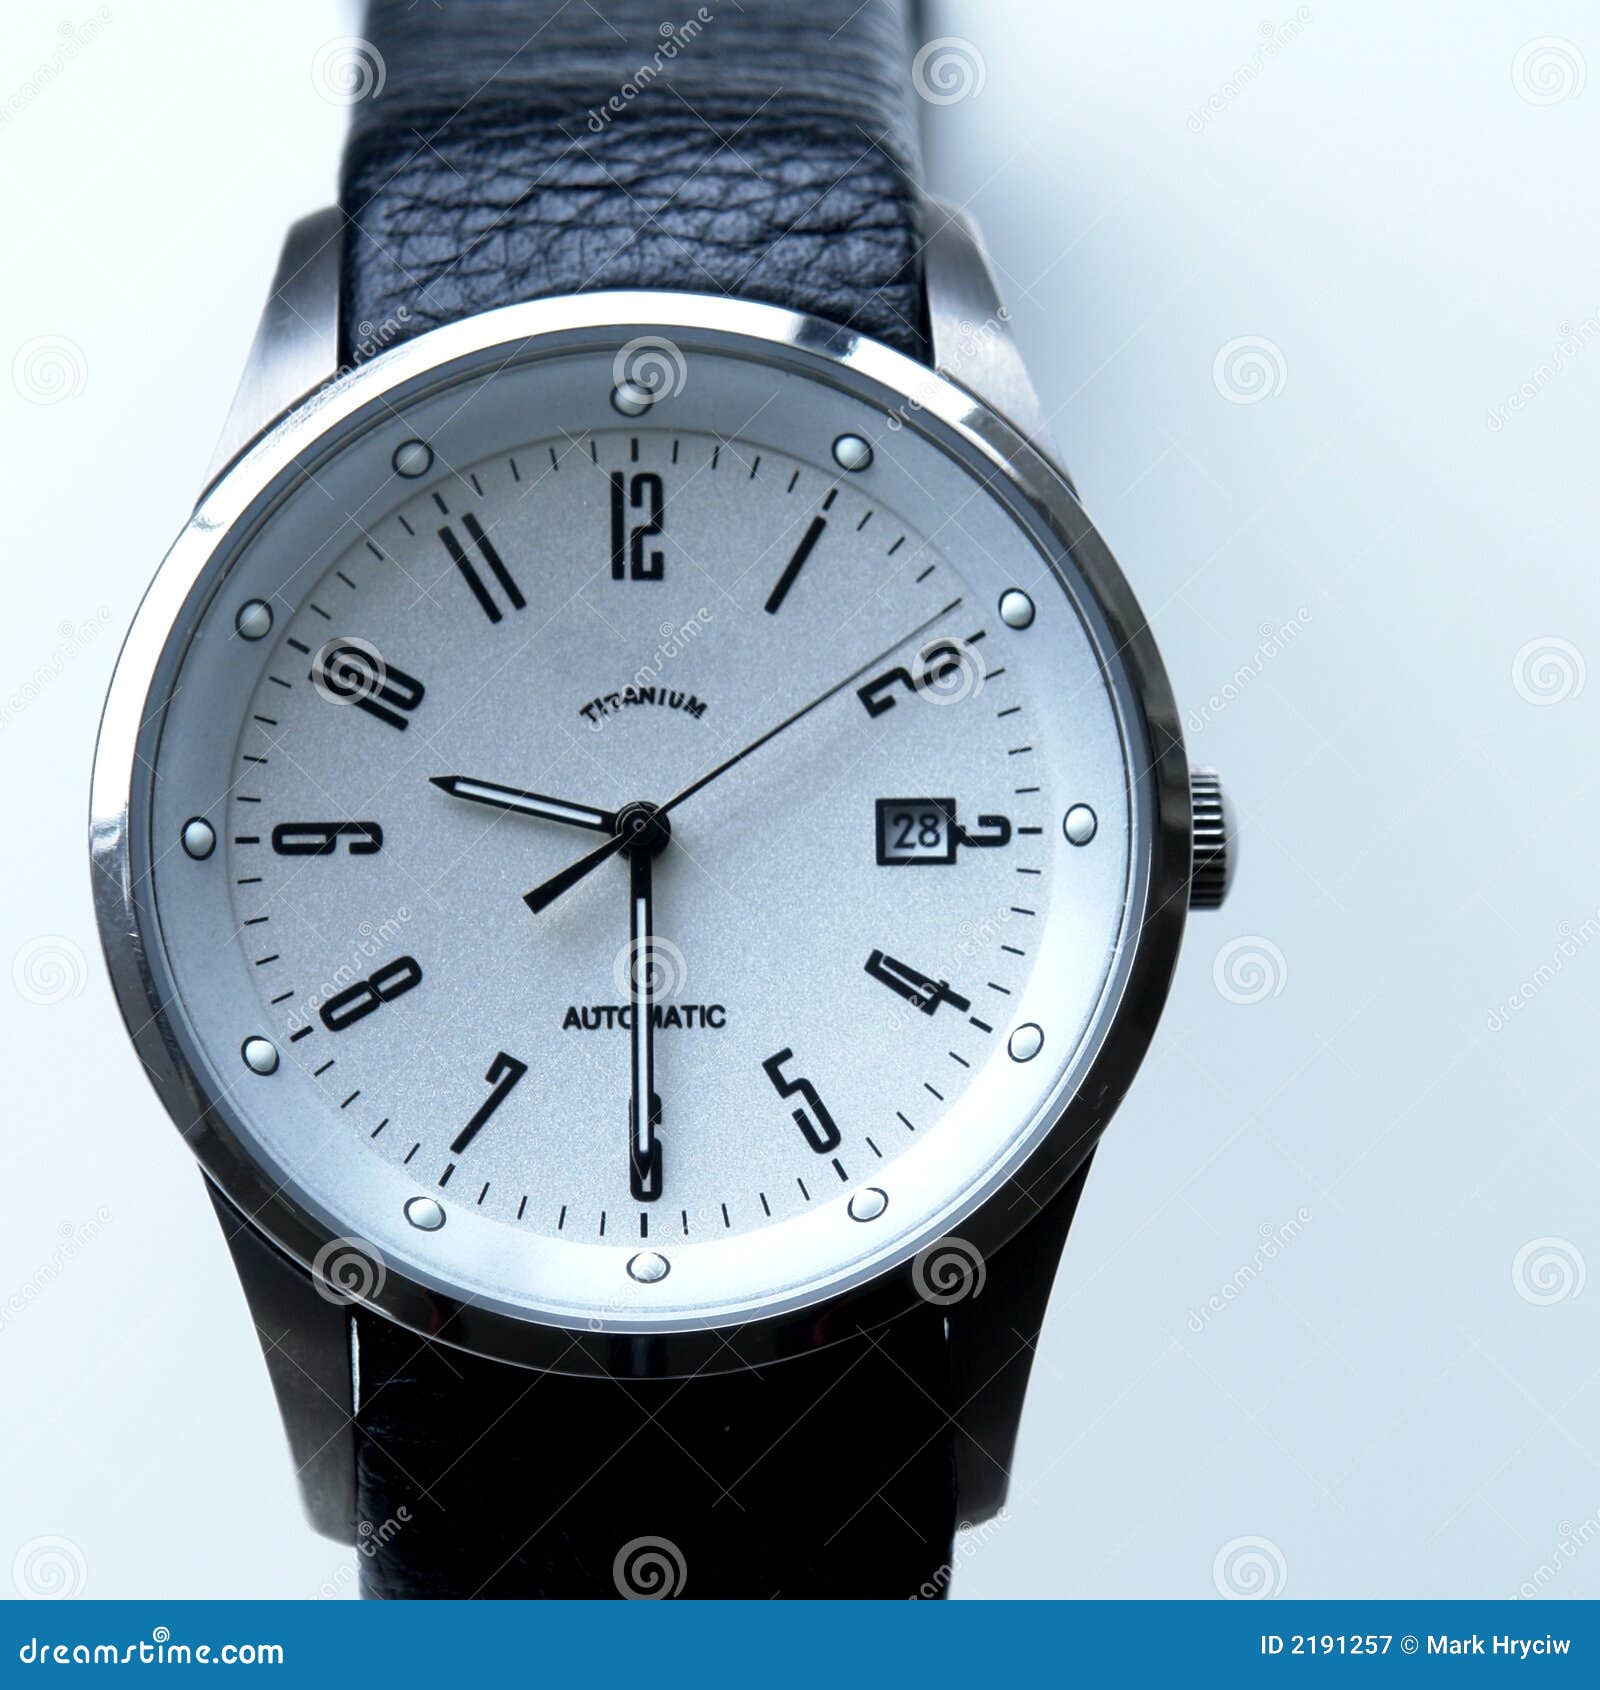 men's titanium watch